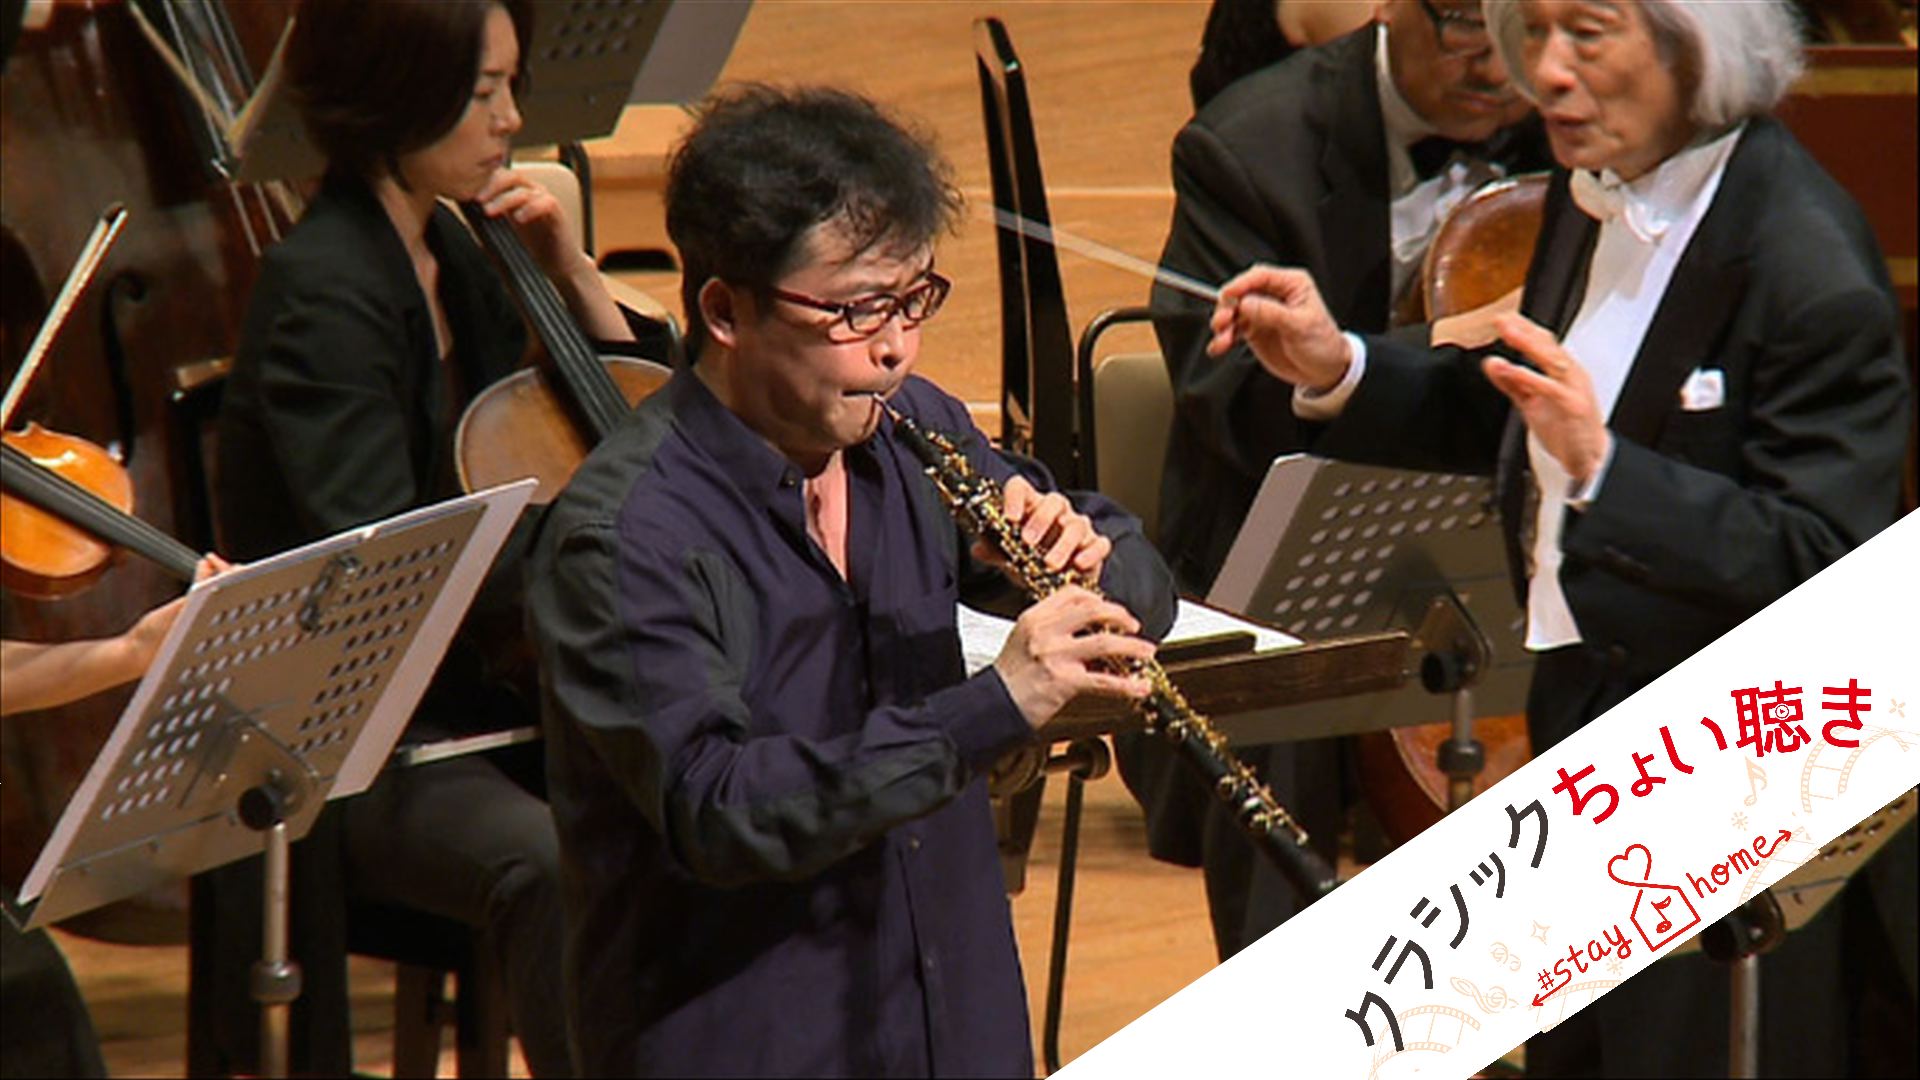 オーボエ：古部賢一
指揮：飯守泰次郎
新日本フィルハーモニー交響楽団
J.S.バッハ：オーボエ協奏曲 BWV 1053
Kenichi Furube, oboe
Taijiro Iimori, conductor
New Japan Philharmonic
J. S. Bach: Oboe Concerto